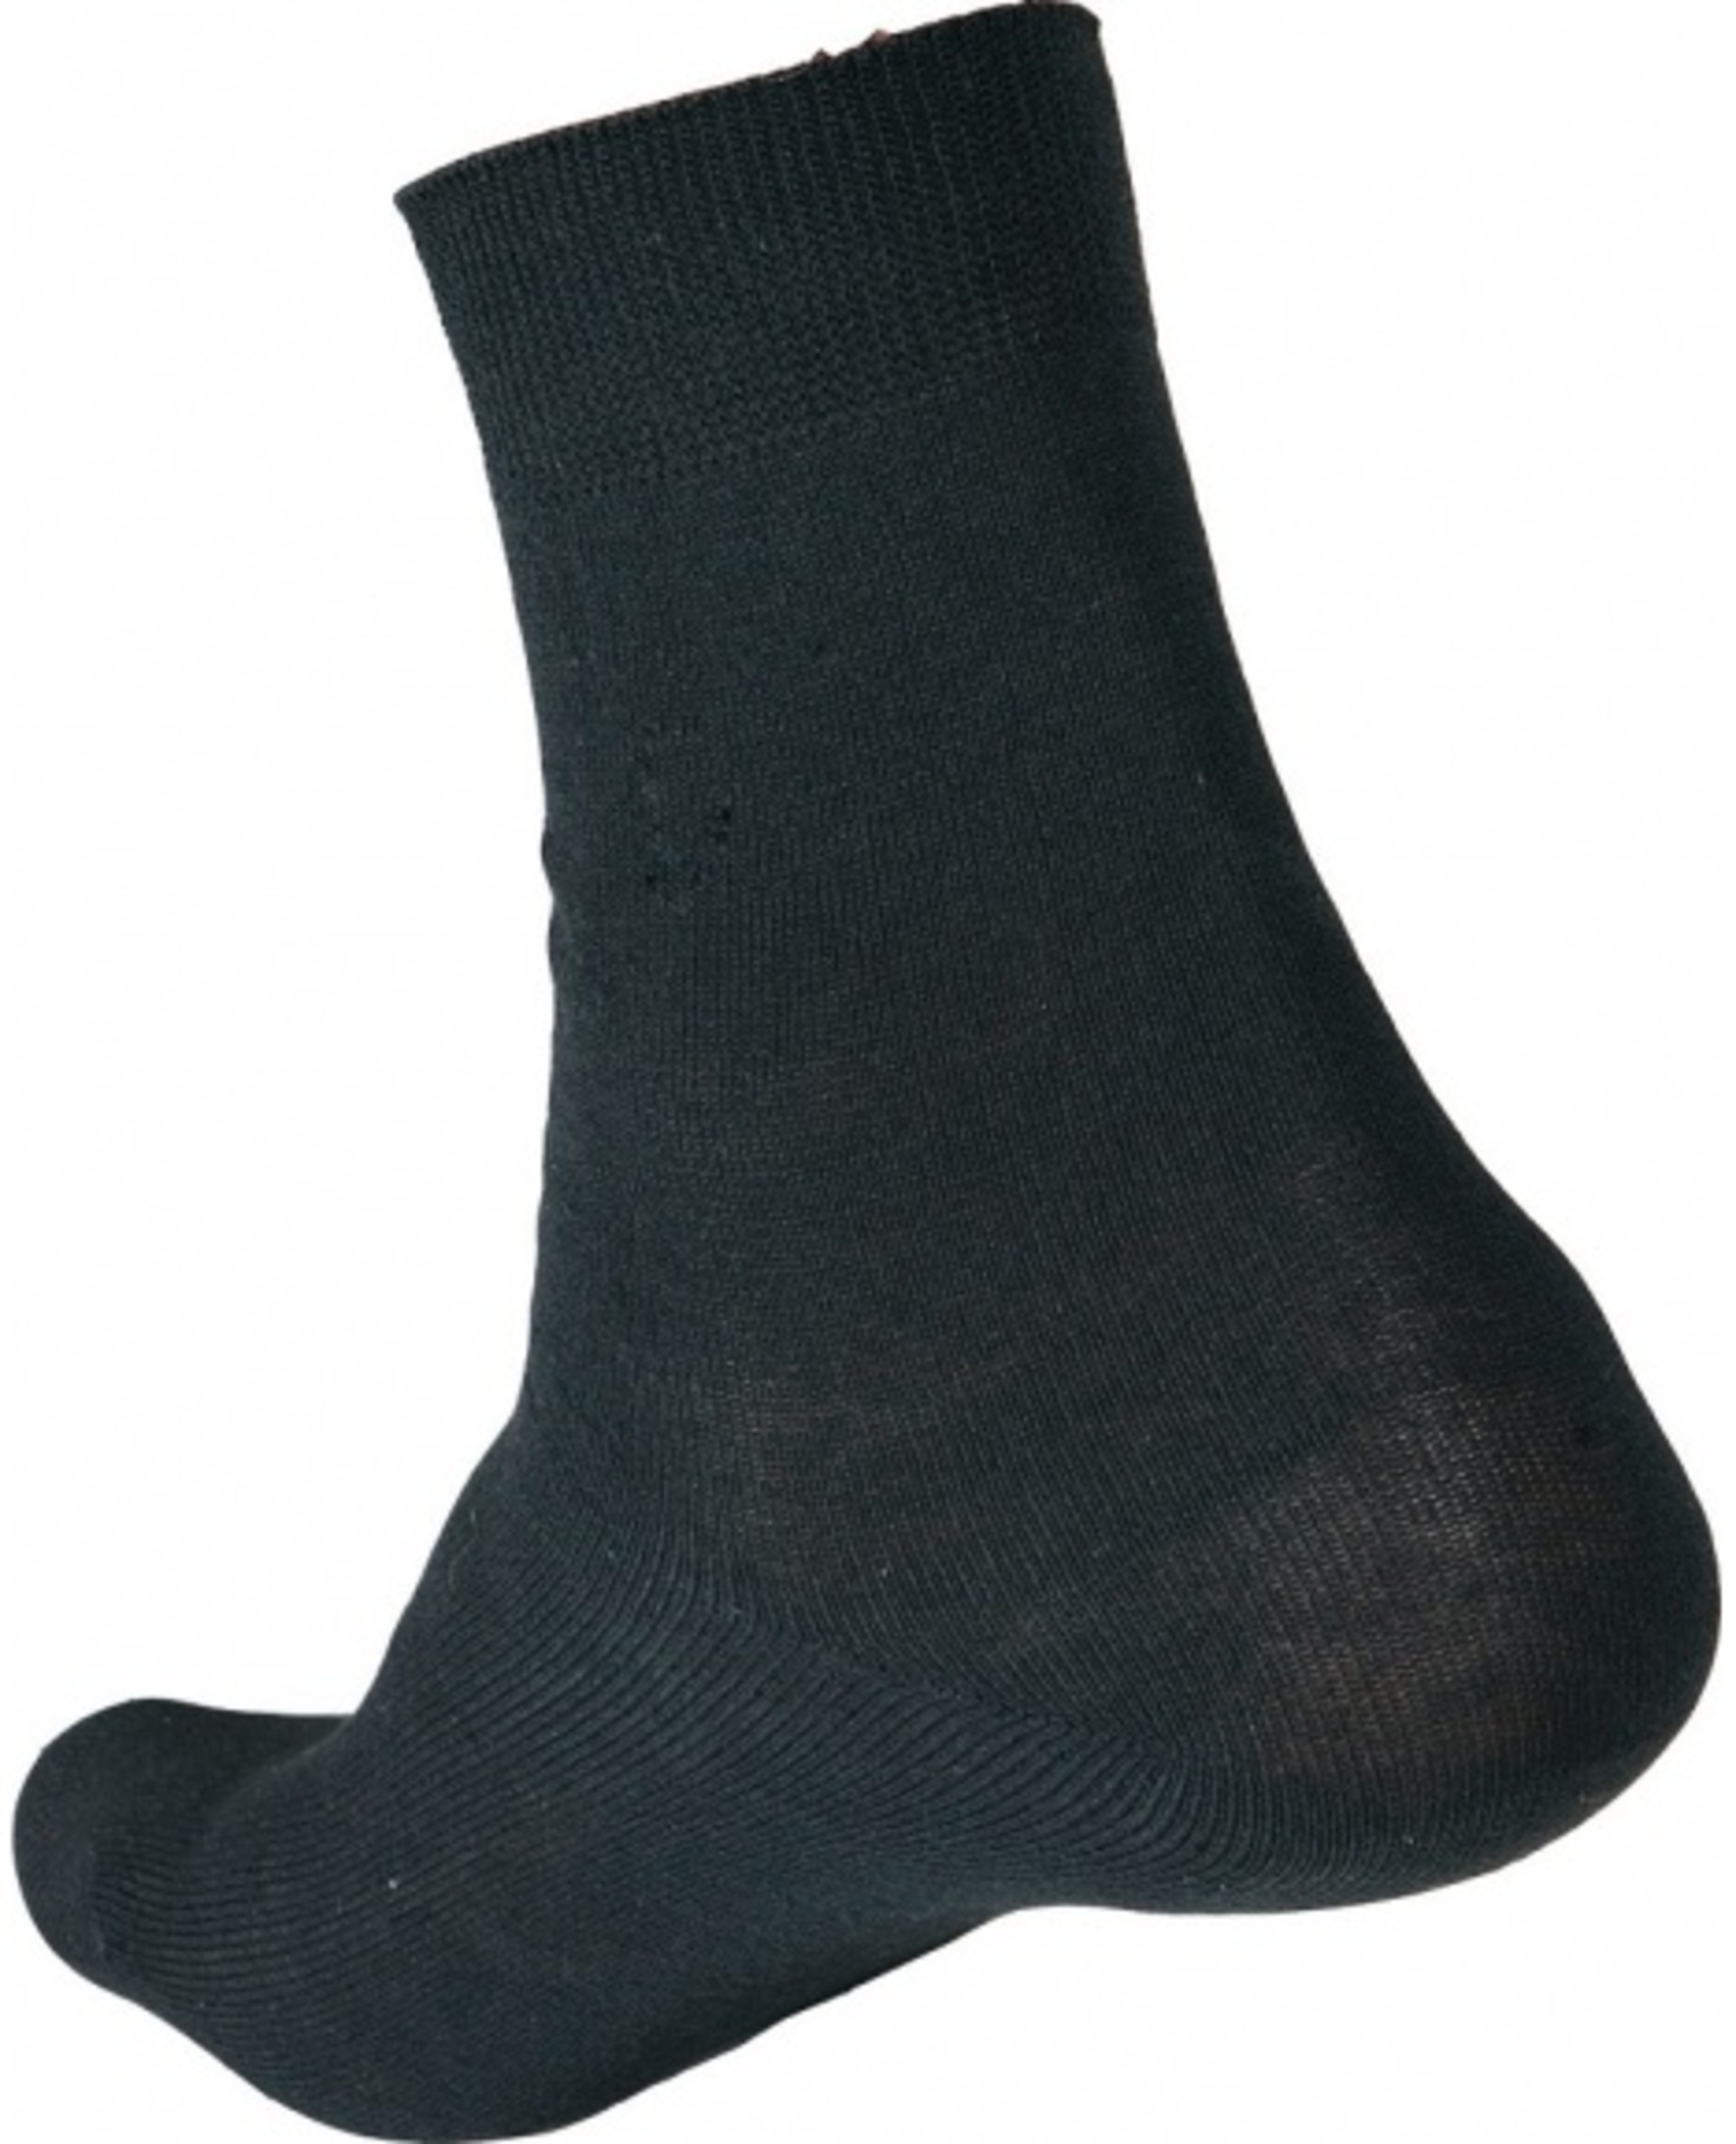 Ponožky CRV MERGE 41